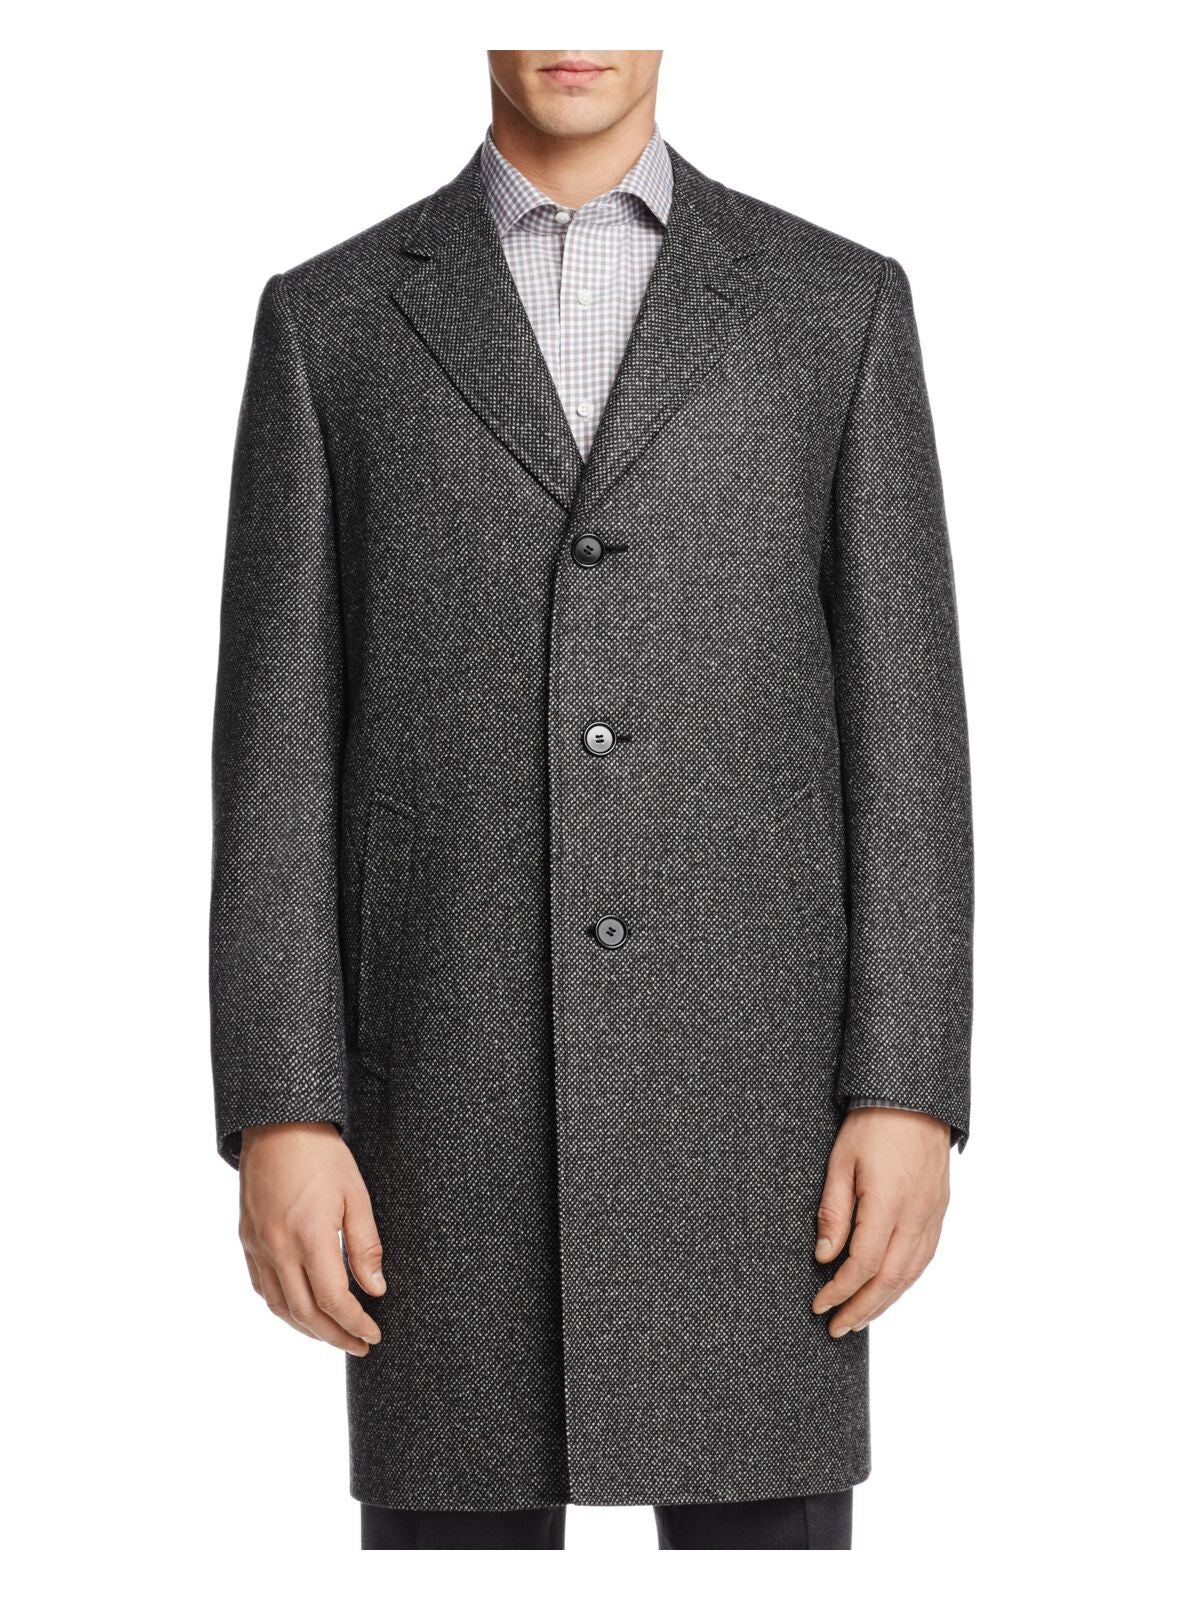 Canali Mens Gray Top Coat 50R